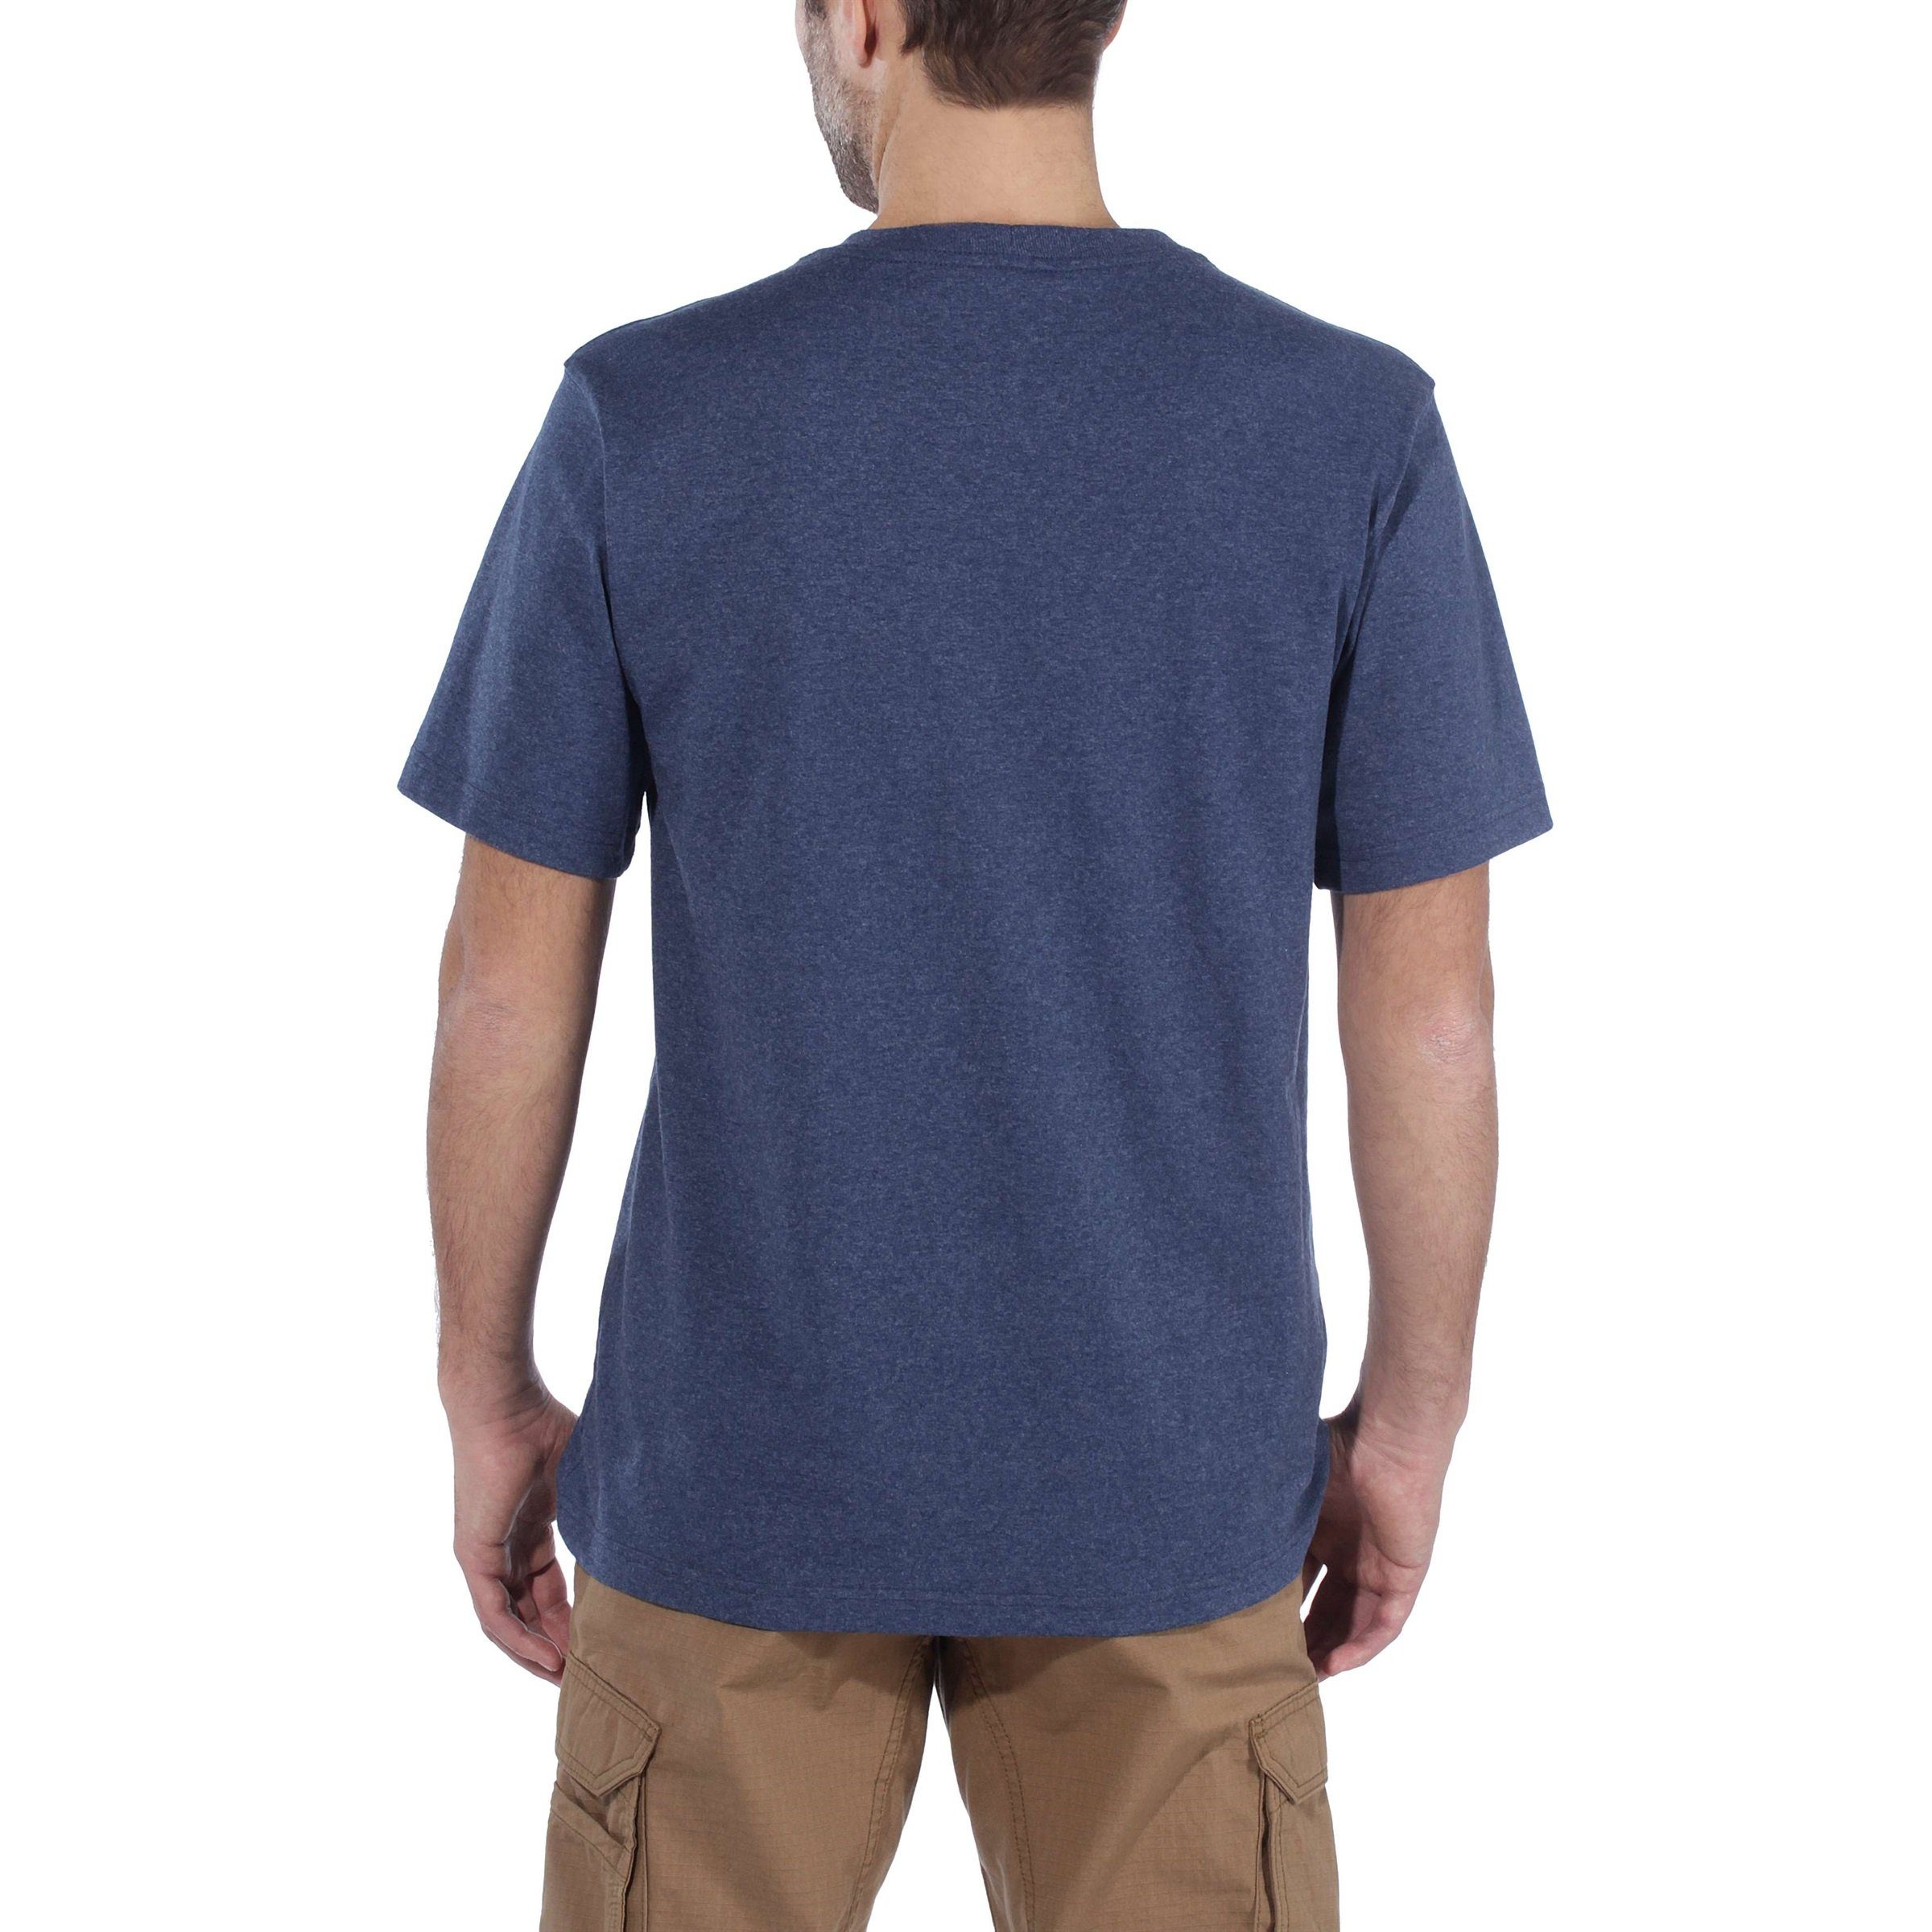 Graphic Carhartt Fit Carhartt Herren cobalt T-Shirt heather dark T-Shirt blue Relaxed Adult Logo Short-Sleeve Heavyweight